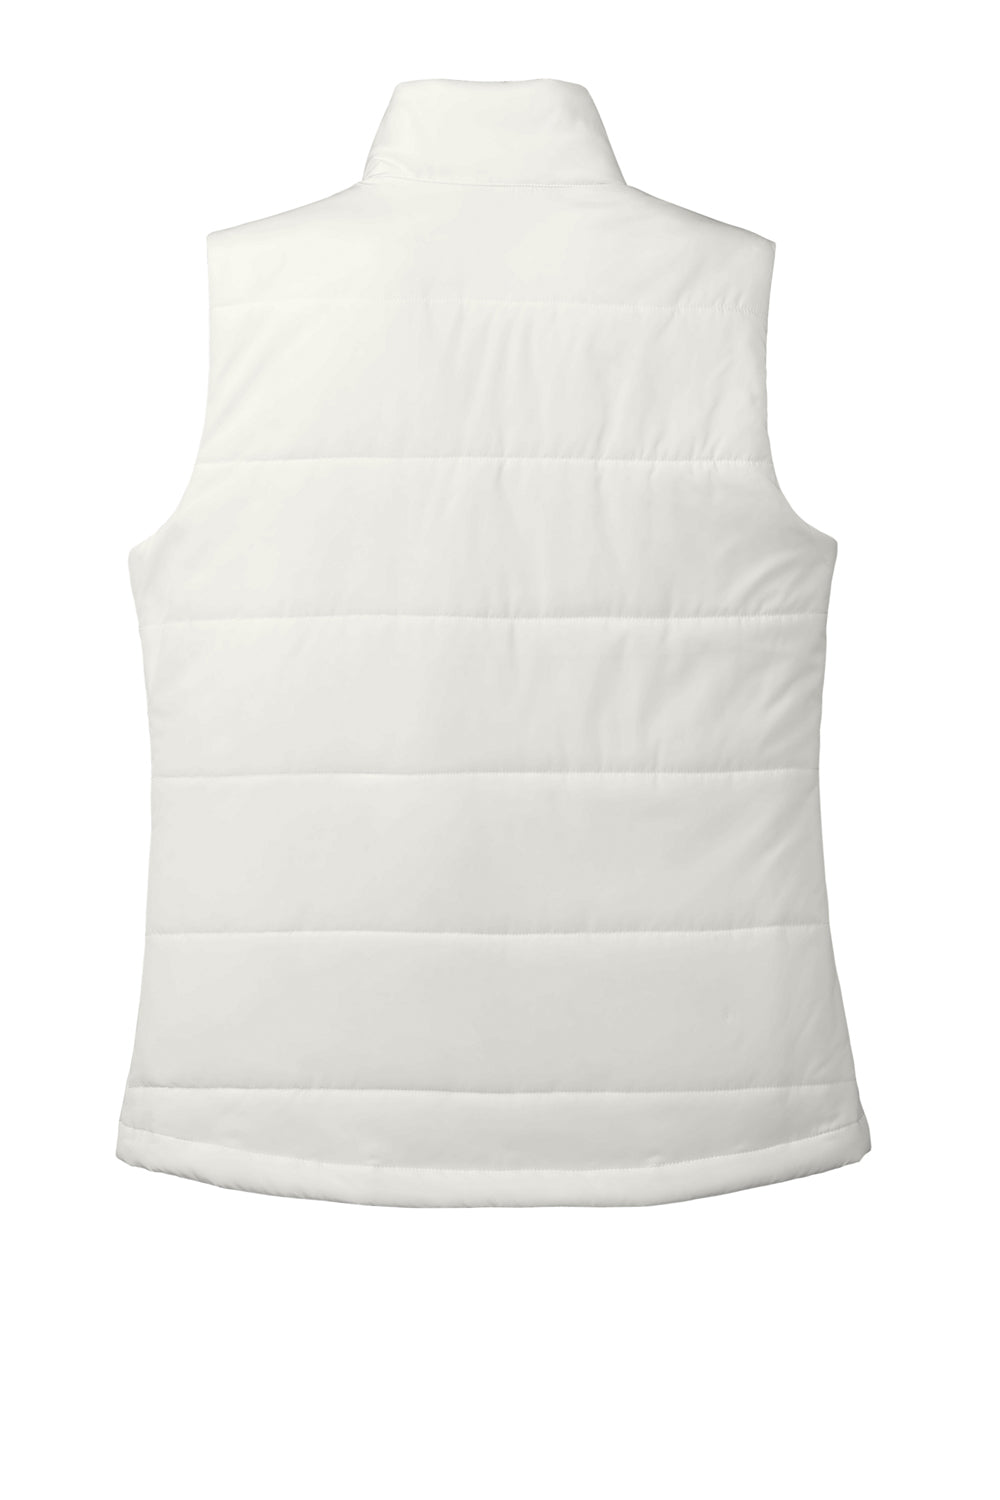 Port Authority L853 Womens Full Zip Puffer Vest Marshmallow White Flat Back